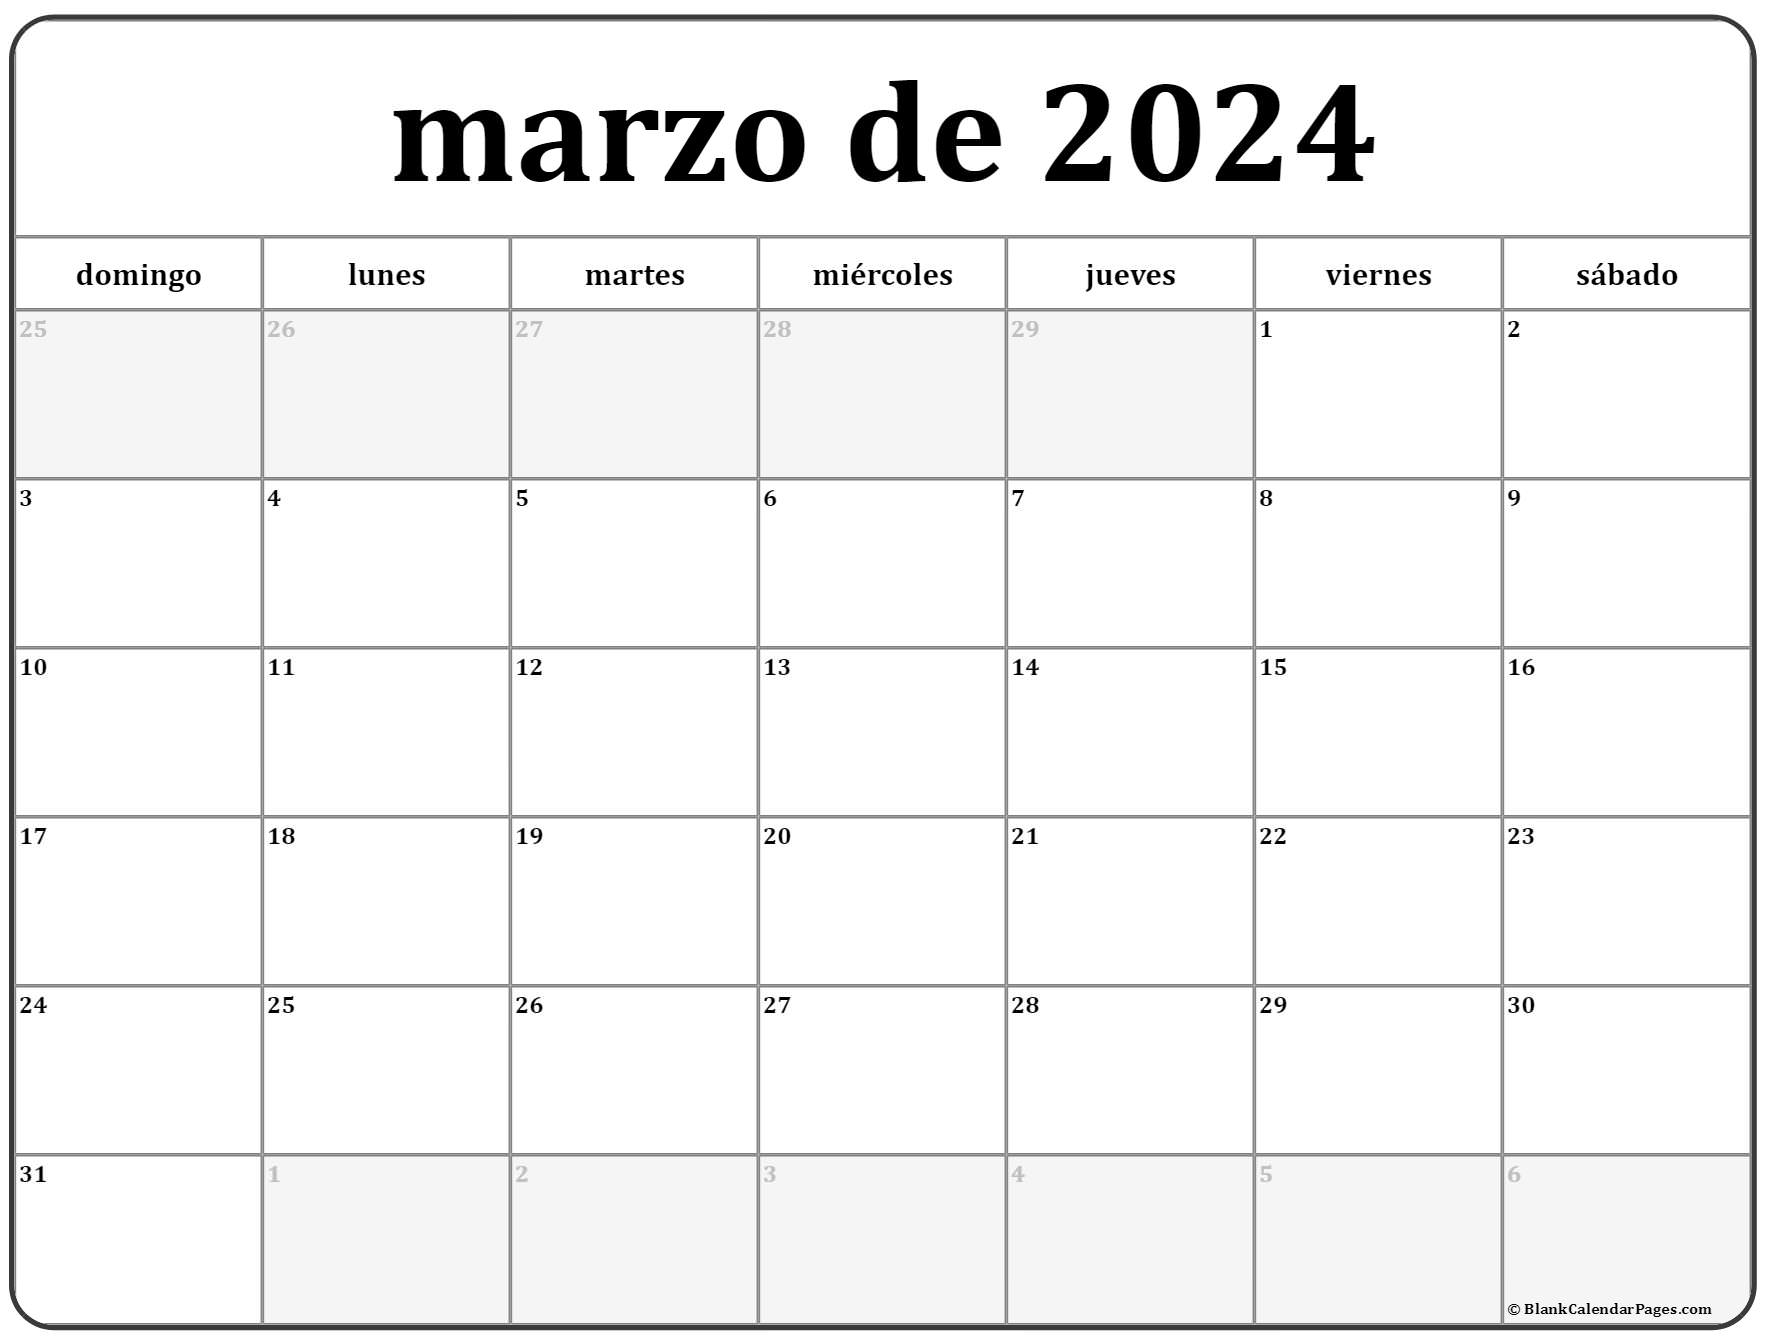 Calendario Marzo marzo de 2024 calendario gratis | Calendario marzo